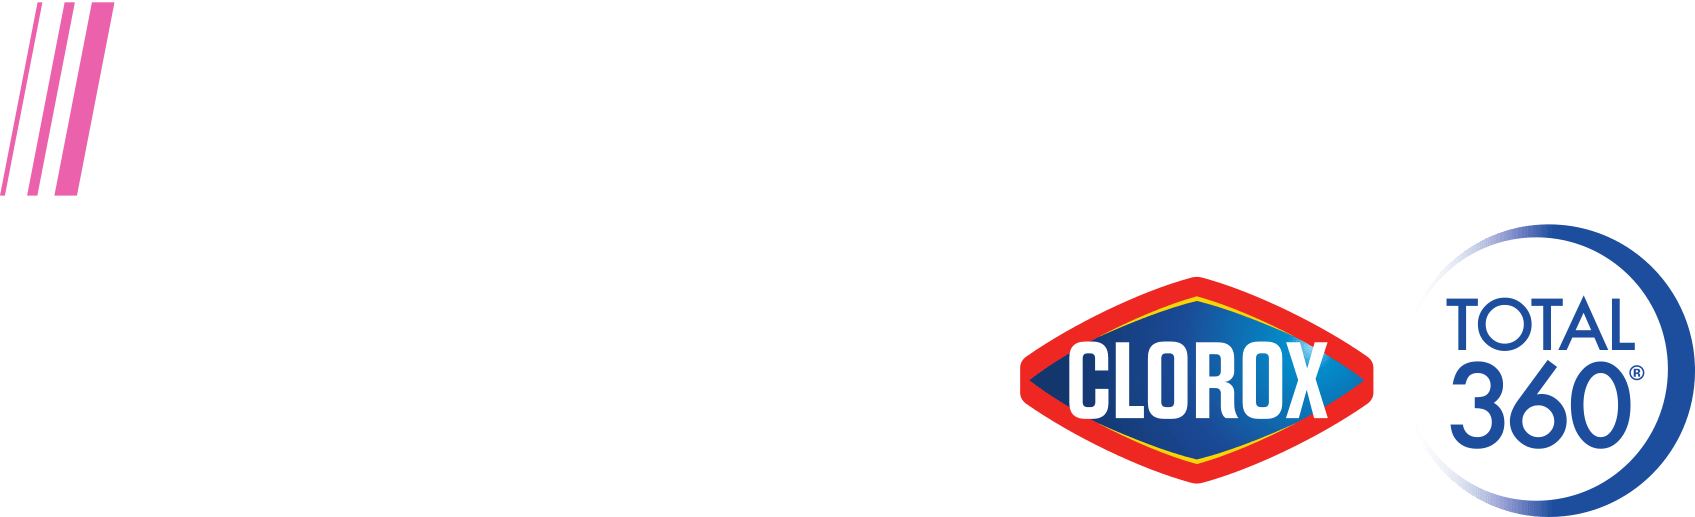 PrecisionCare logo